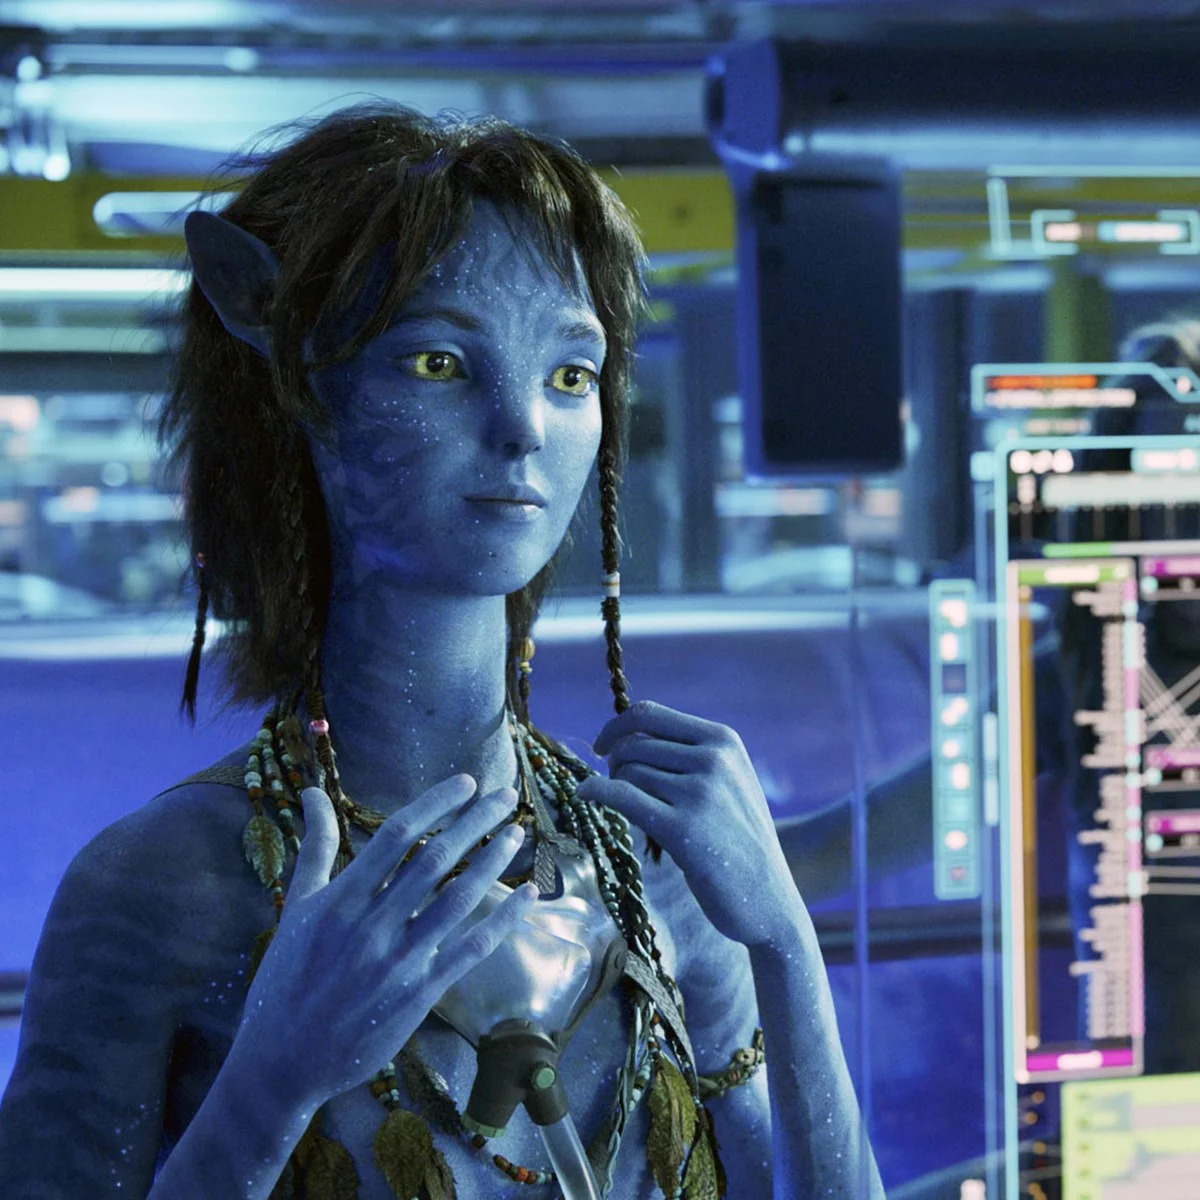 Avatar 2 sẽ có sự tham gia của cô bé 14 tuổi và diễn viên 73 tuổi, một sự kết hợp đặc biệt giữa hai thế hệ tài năng đa dạng. Những tác phẩm điện ảnh đình đám của họ đã và đang truyền cảm hứng cho rất nhiều khán giả trên toàn thế giới. Avatar 2 hứa hẹn sẽ mang đến cho khán giả những giây phút giải trí thú vị và đầy kịch tính.